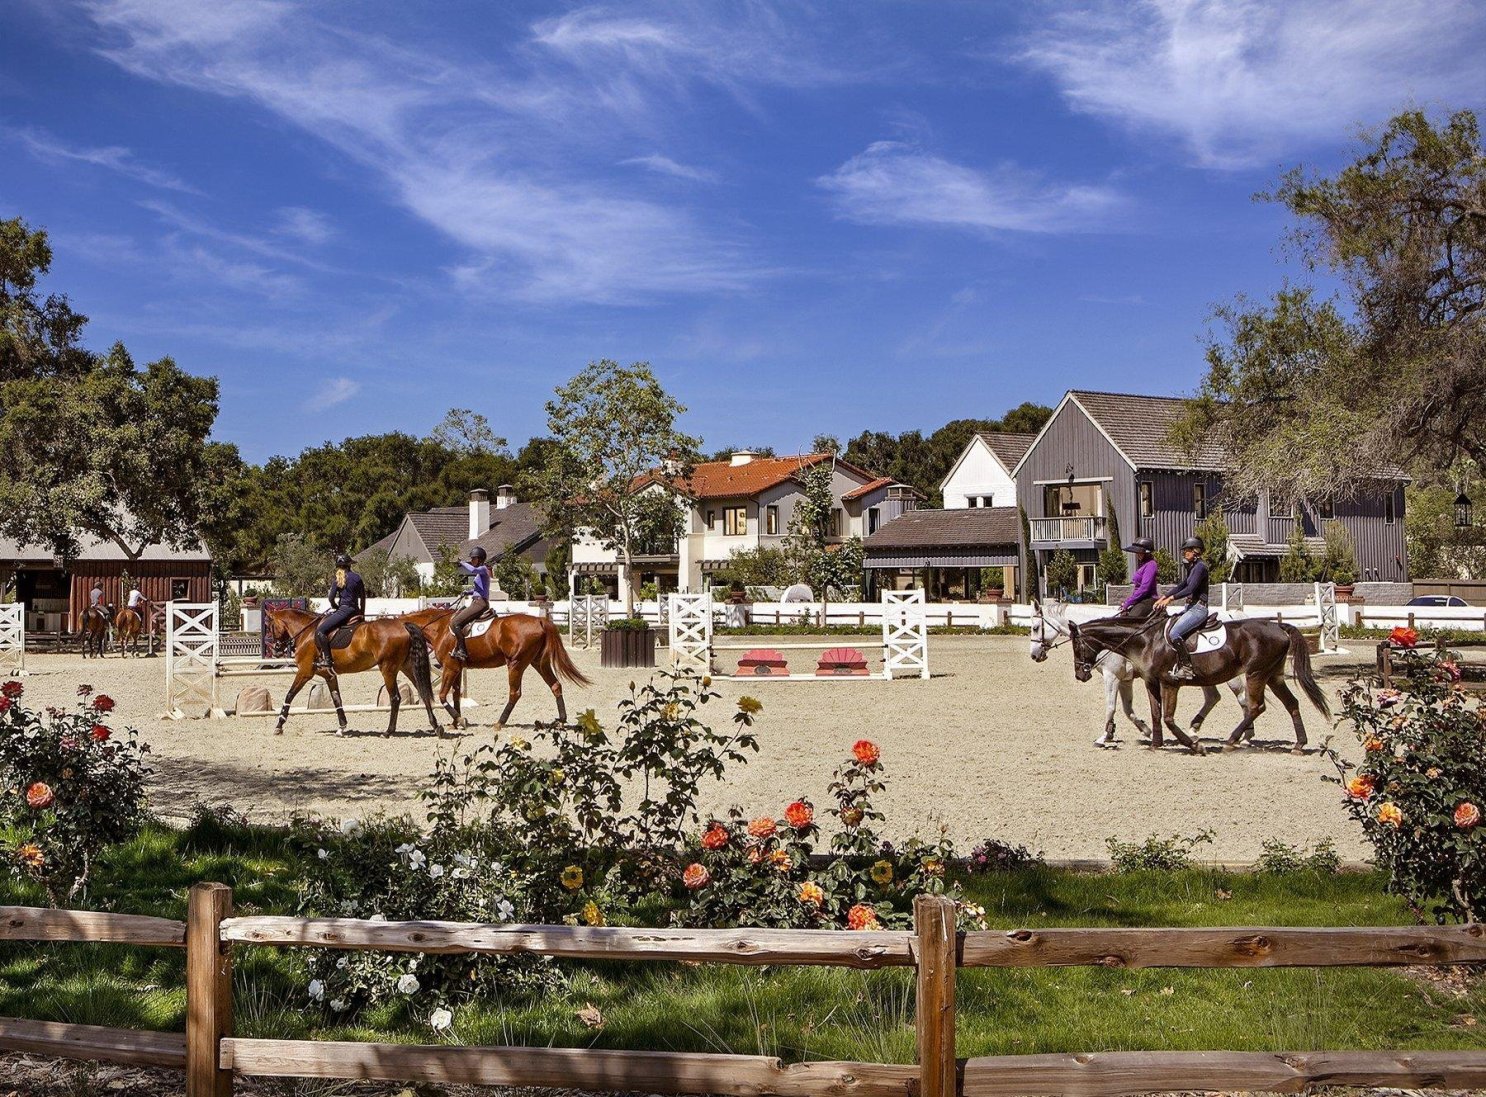 Ortega Equestrian Center